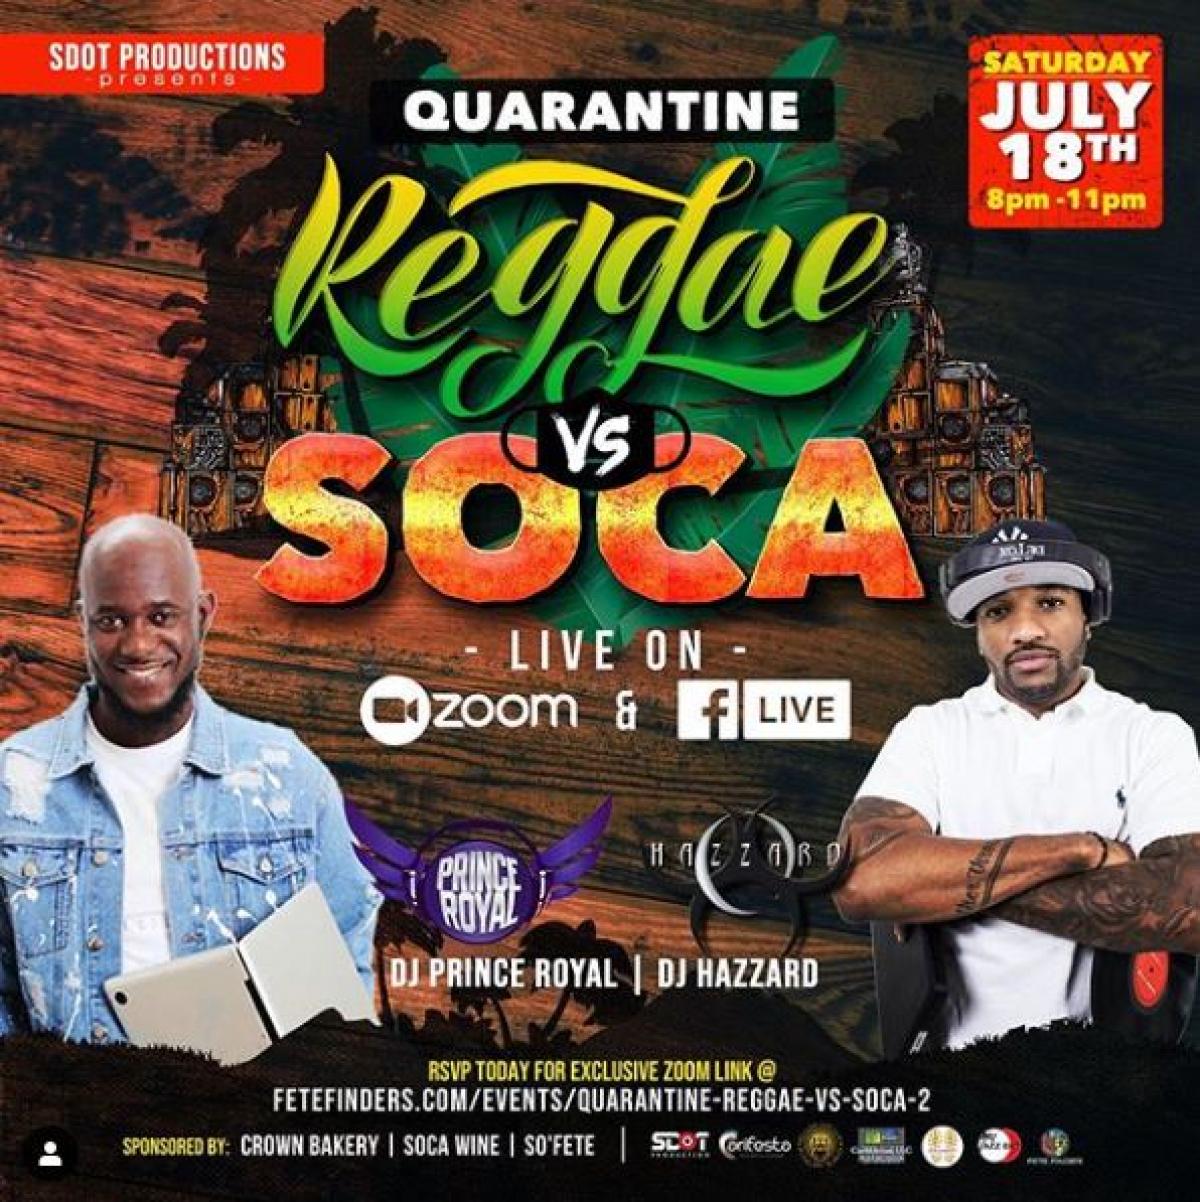 Quarantine Reggae vs. Soca 2 flyer or graphic.